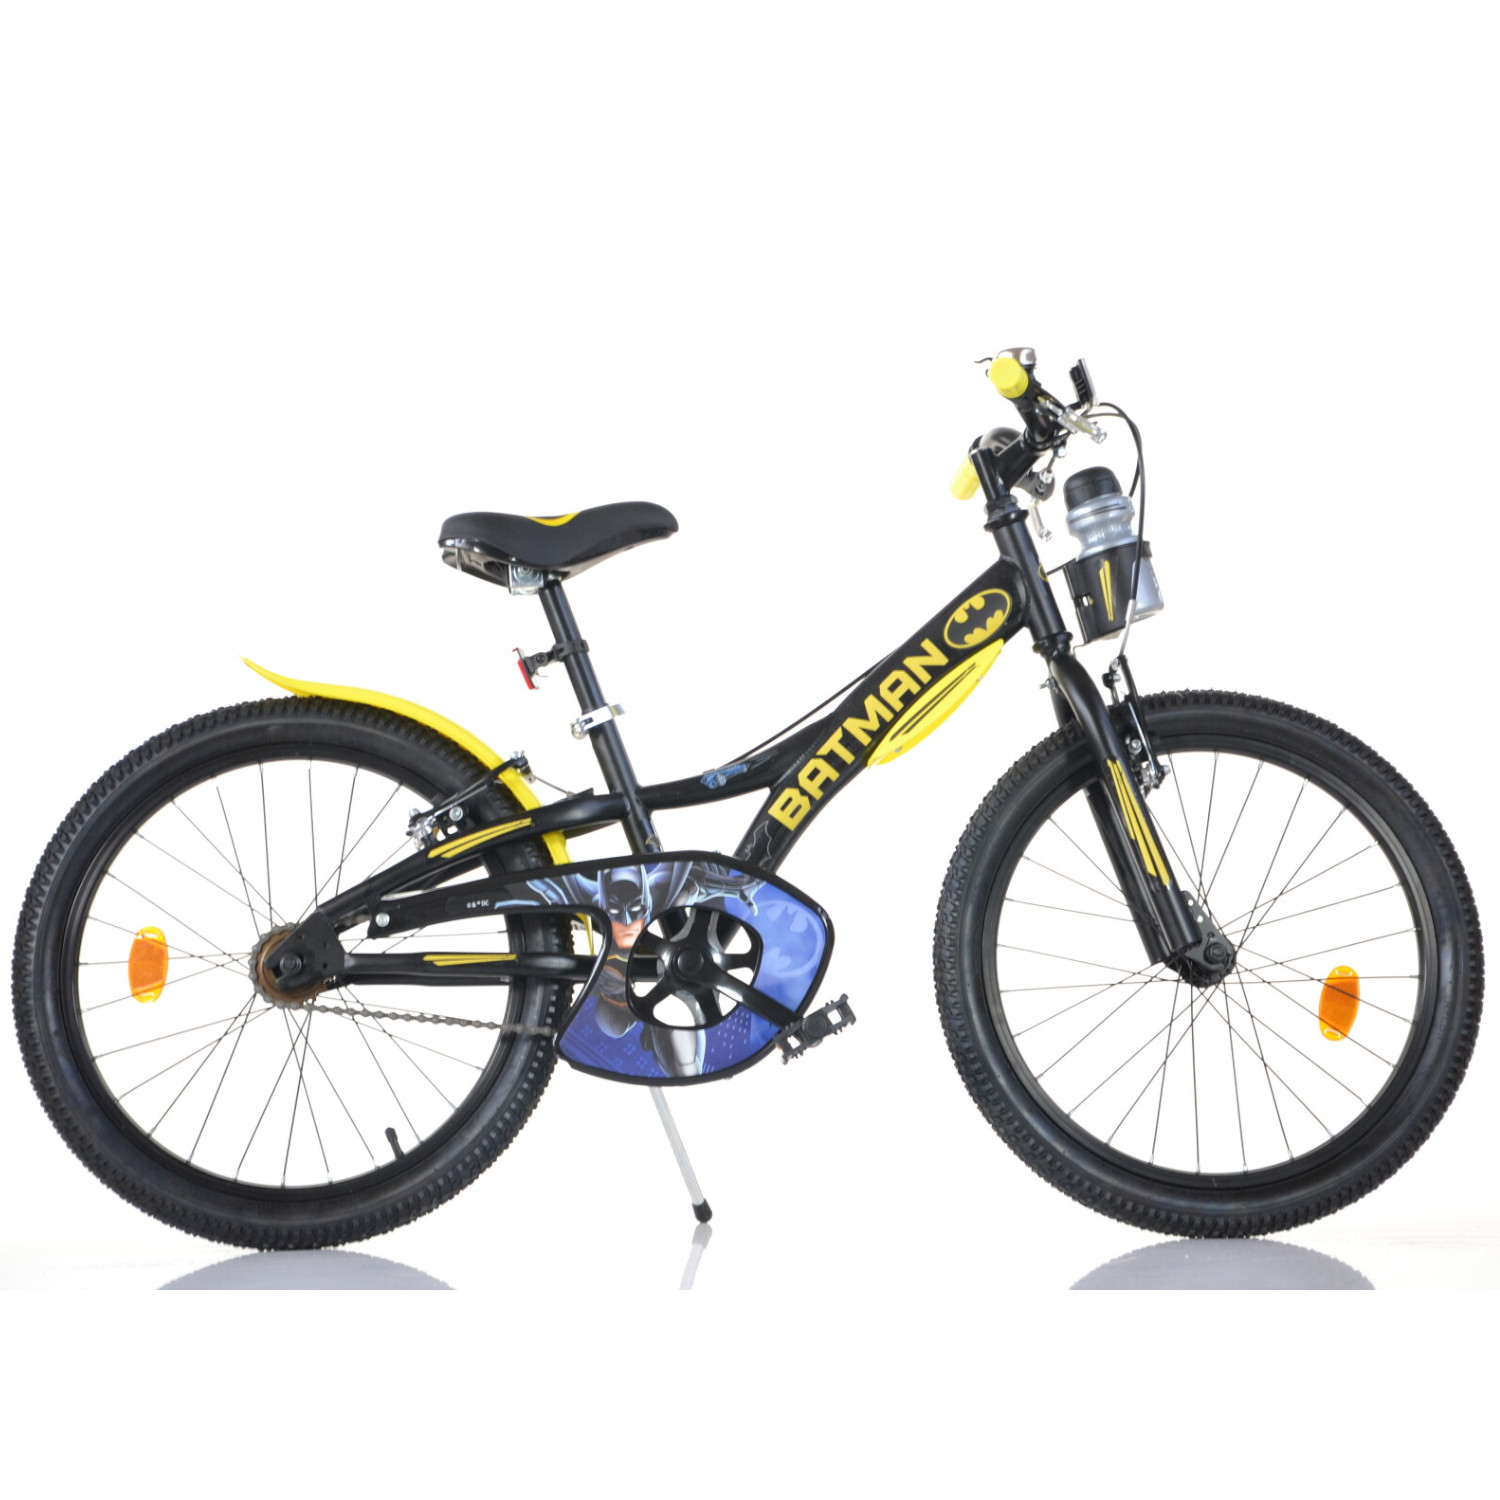 Bicicletta per bambini e ragazzini modello batman misura 20 pollici - BATMAN, DC COMICS